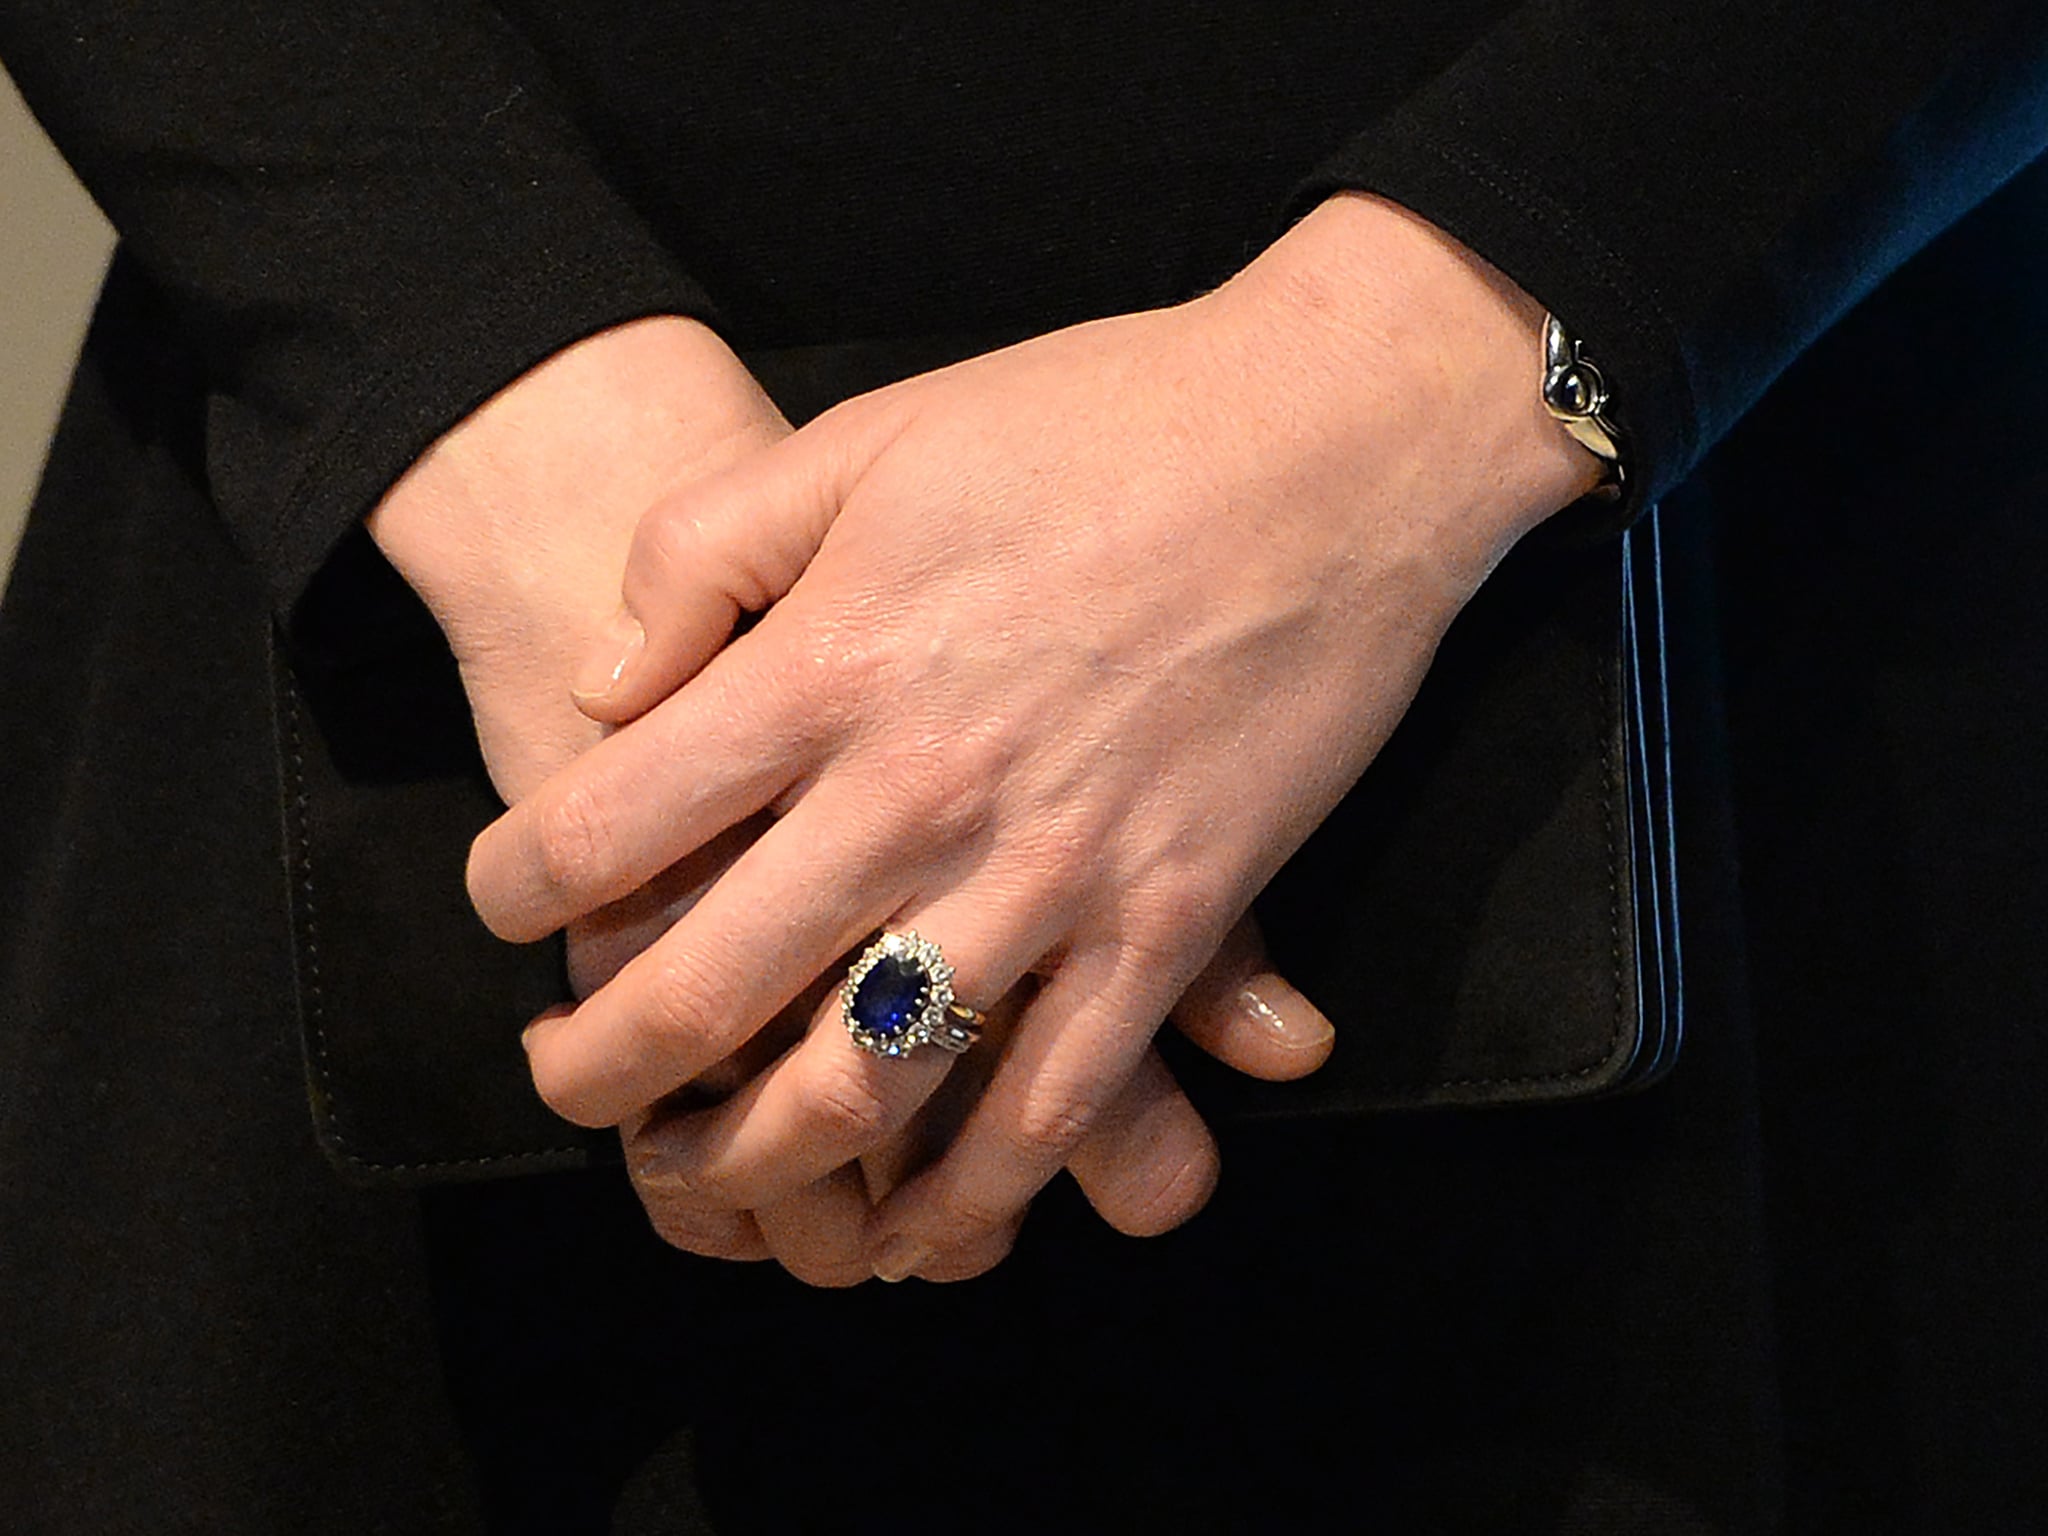 Сапфир на пальце. Кольцо Кейт Миддлтон. Кольцо Кейт Миддлтон с сапфиром. Кейт Миддлтон сапфиры. Обручальное кольцо принцессы Кейт Миддлтон.